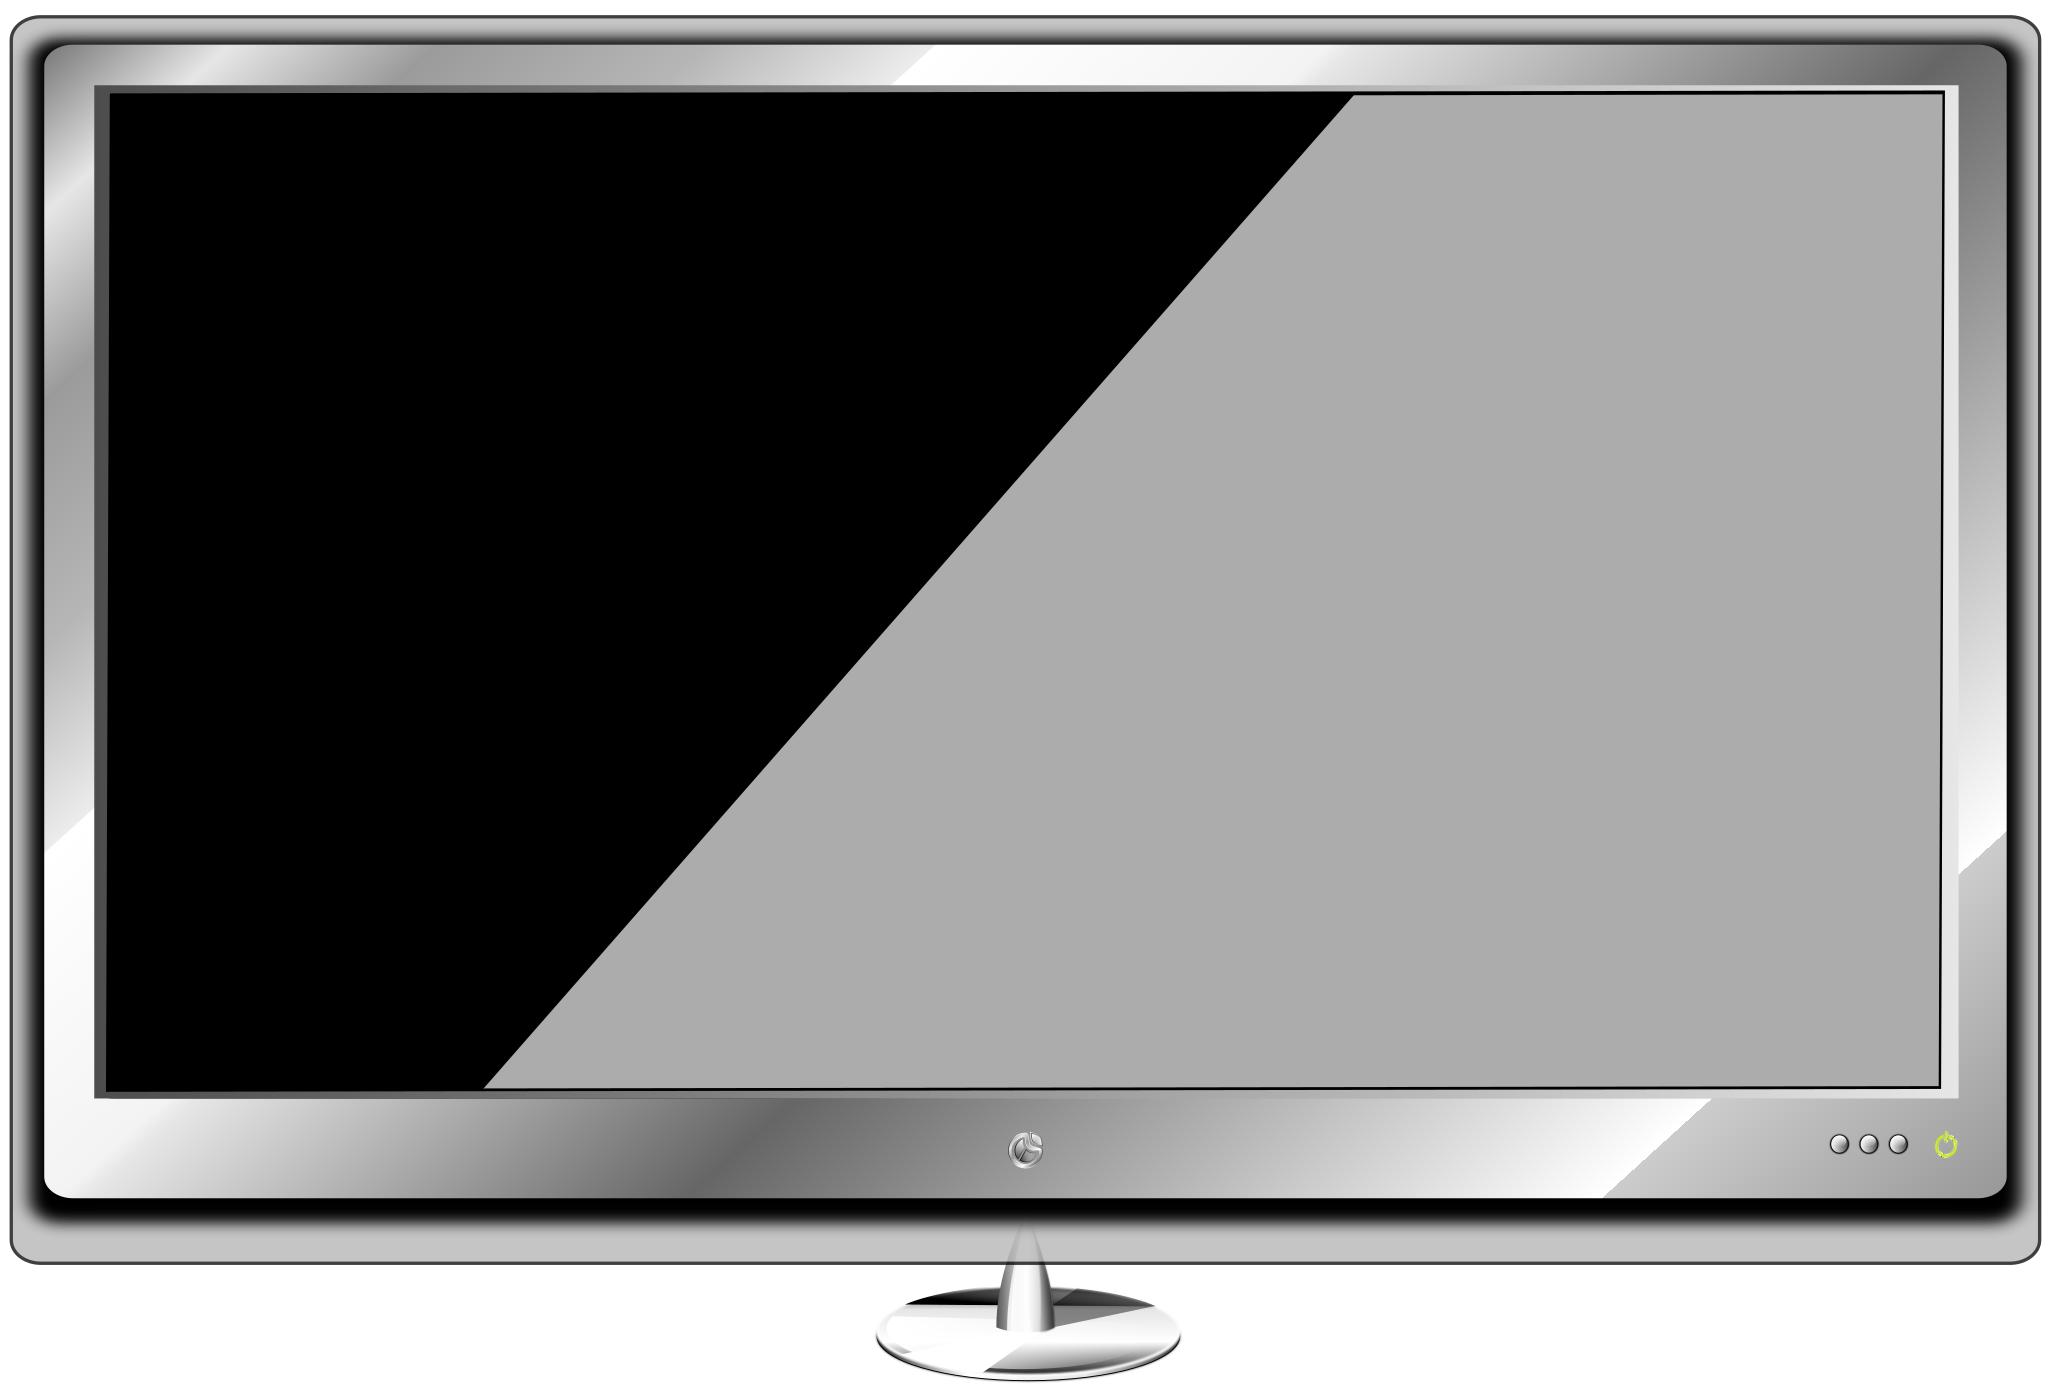 Телевизор с пустым экраном